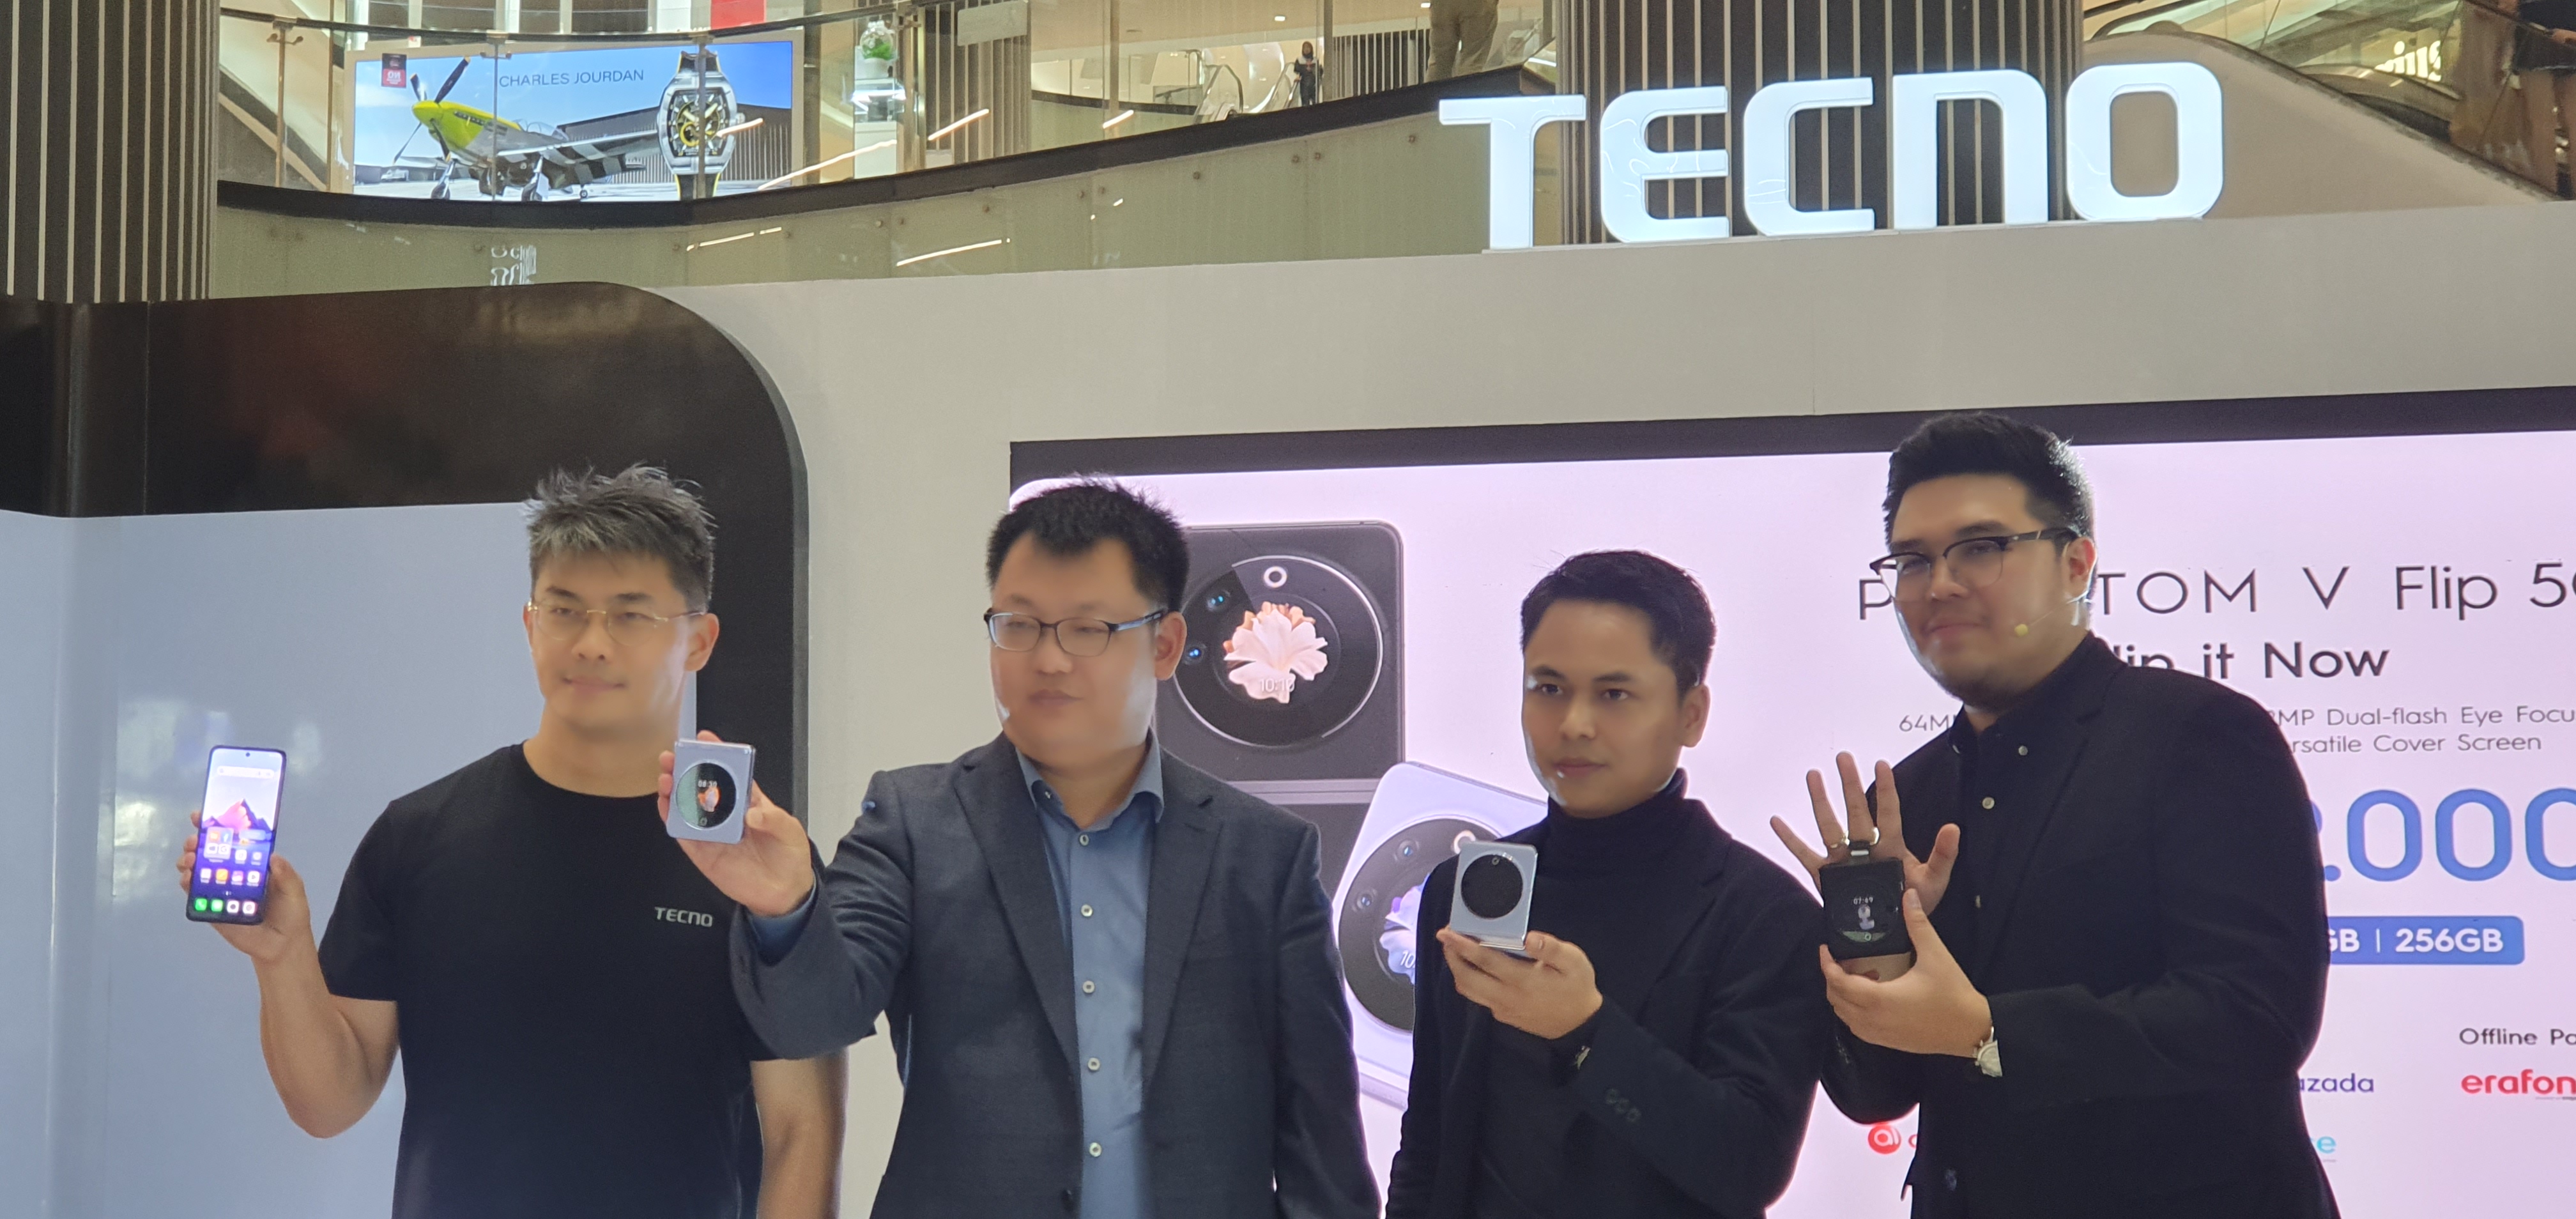 Tecno Hadirkan Ponsel Lipat Phantom V Flip di Indonesia, Harganya Rp7 Jutaan